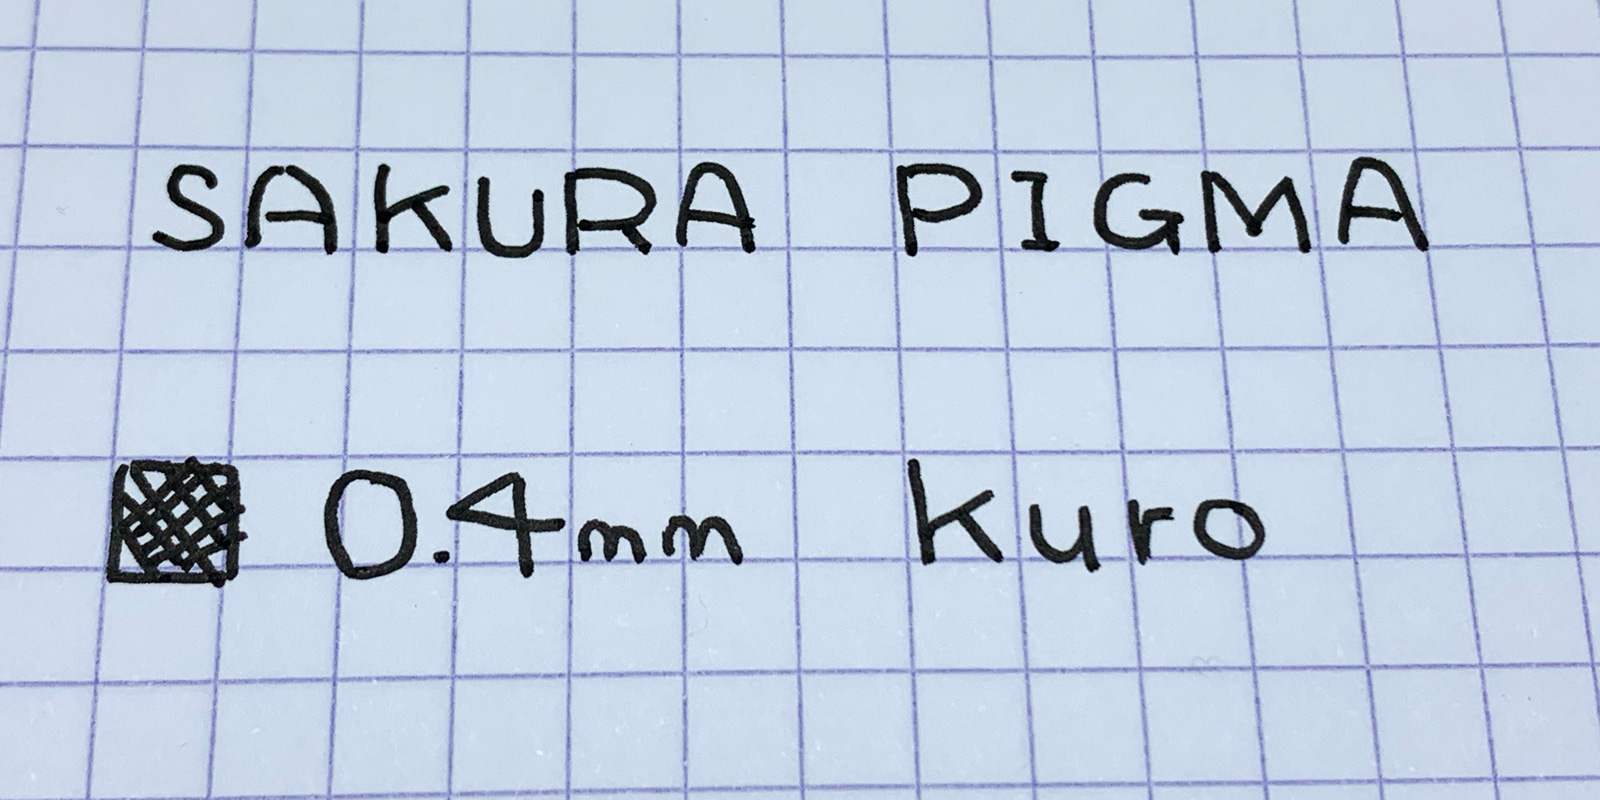 PIGMA 0.4mm くろ 書いてみた